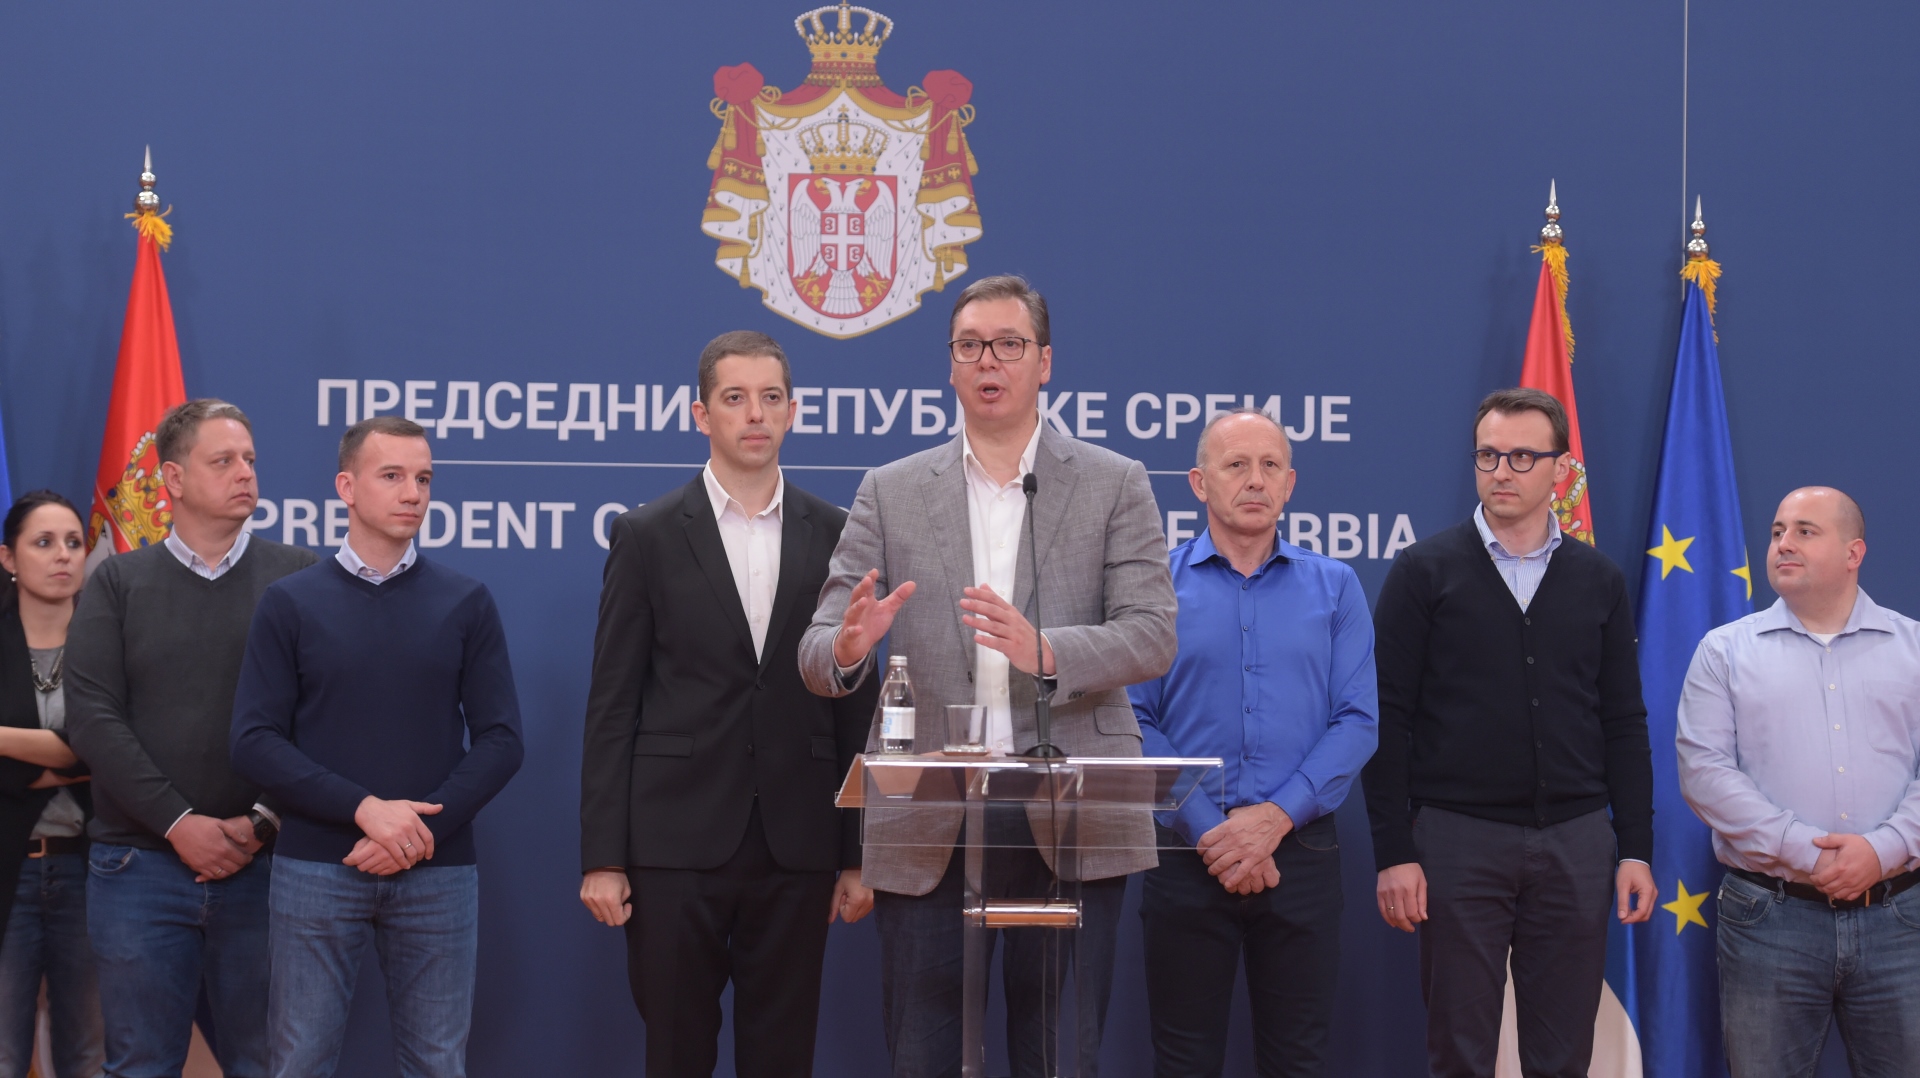 Predsednik Srbije Aleksandar Vucic, cestitao je Srpskoj listi uspeh na vanrednim izborima na KiM.